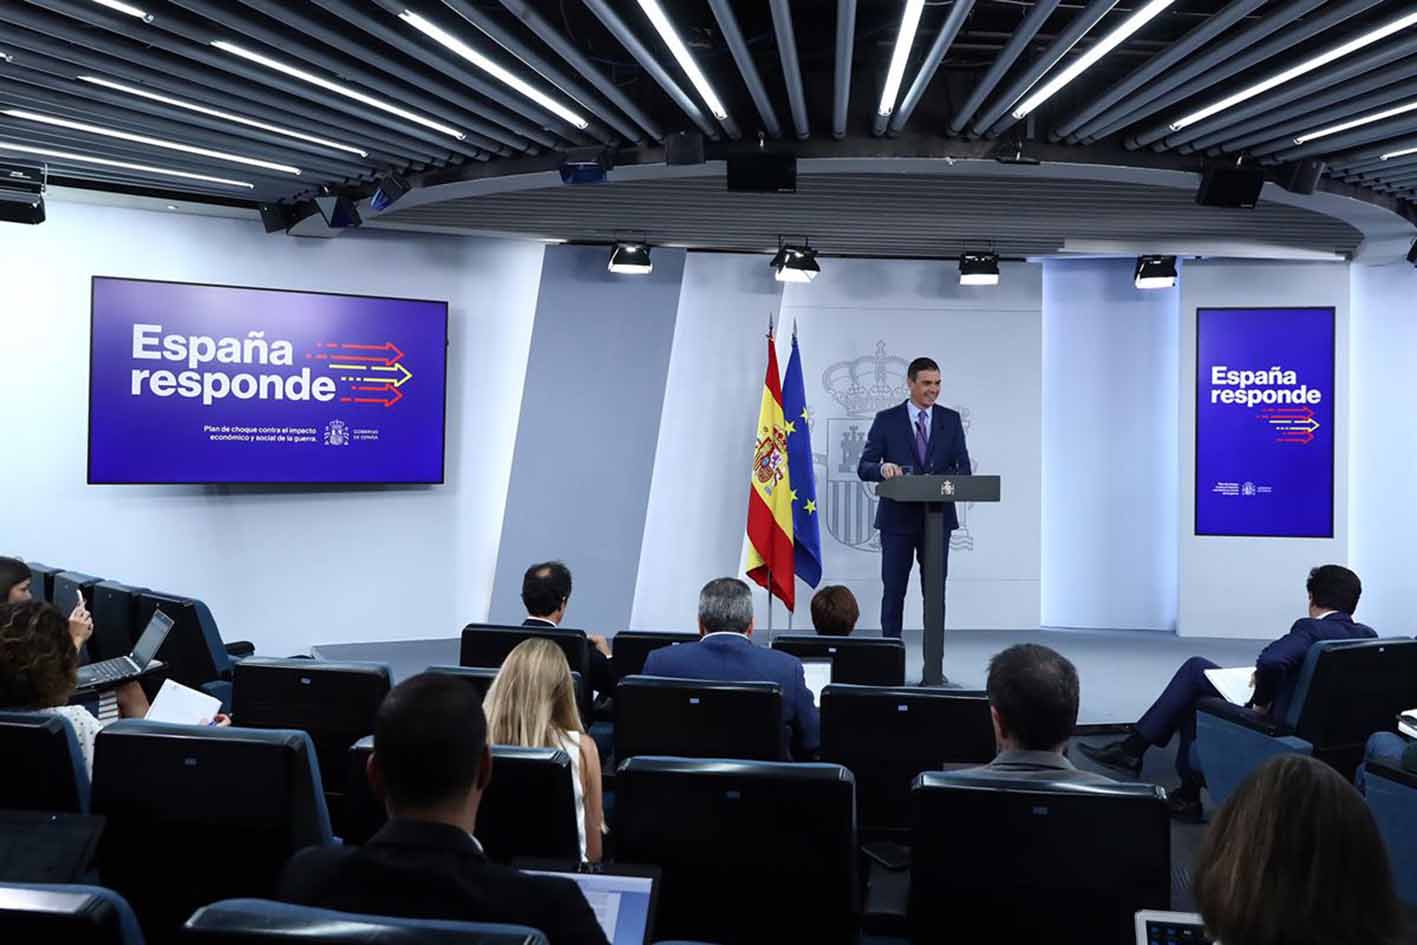 El presidente del Gobierno comparece ante los medios de comunicación, tras la reunión del Consejo de Ministros extraordinario. | Foto: Pool Moncloa/Fernando Calvo.